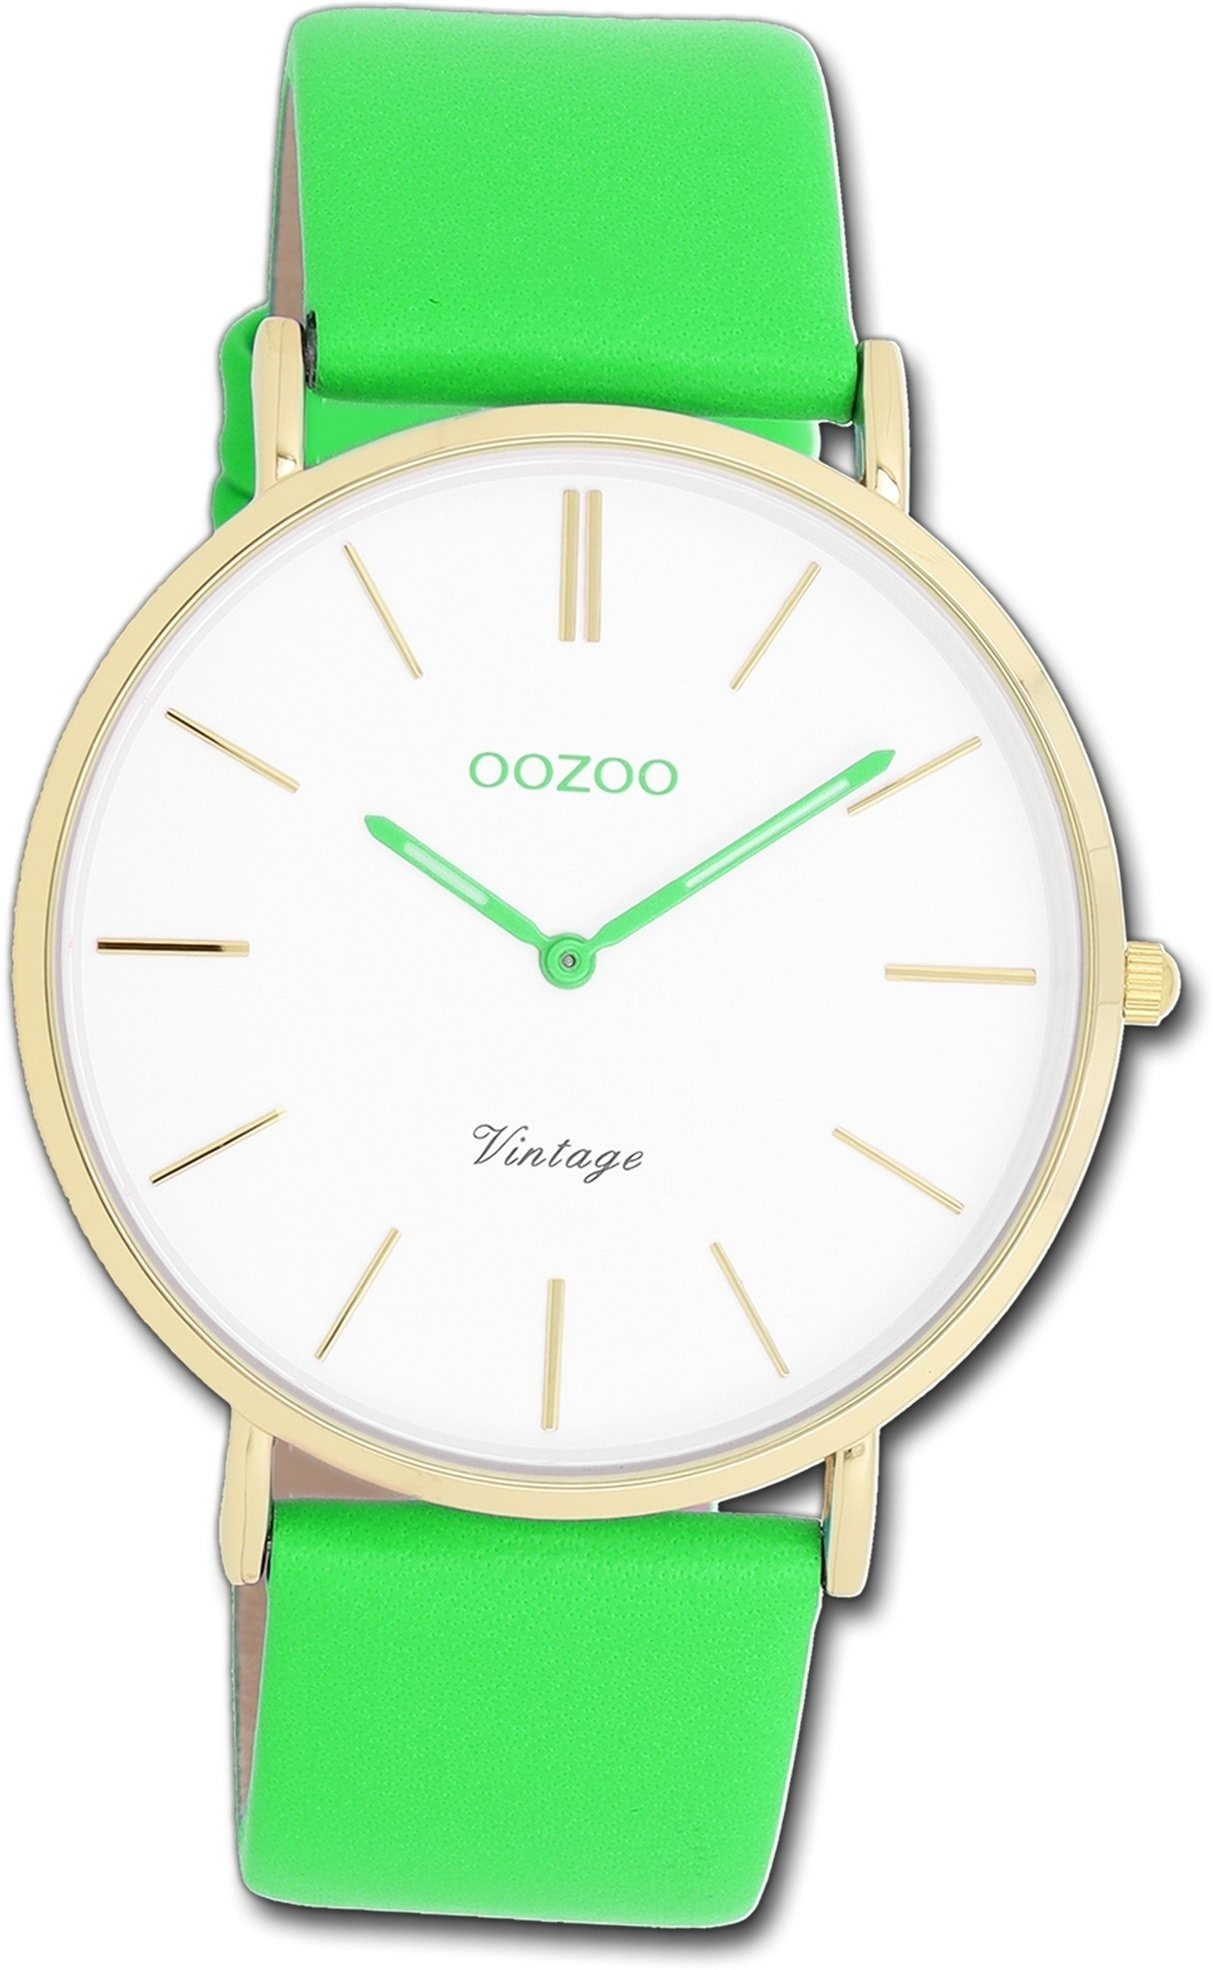 groß Lederarmband grün, Quarzuhr Damenuhr Damen OOZOO Gehäuse, Armbanduhr Oozoo rundes Vintage 40mm) grün, (ca.